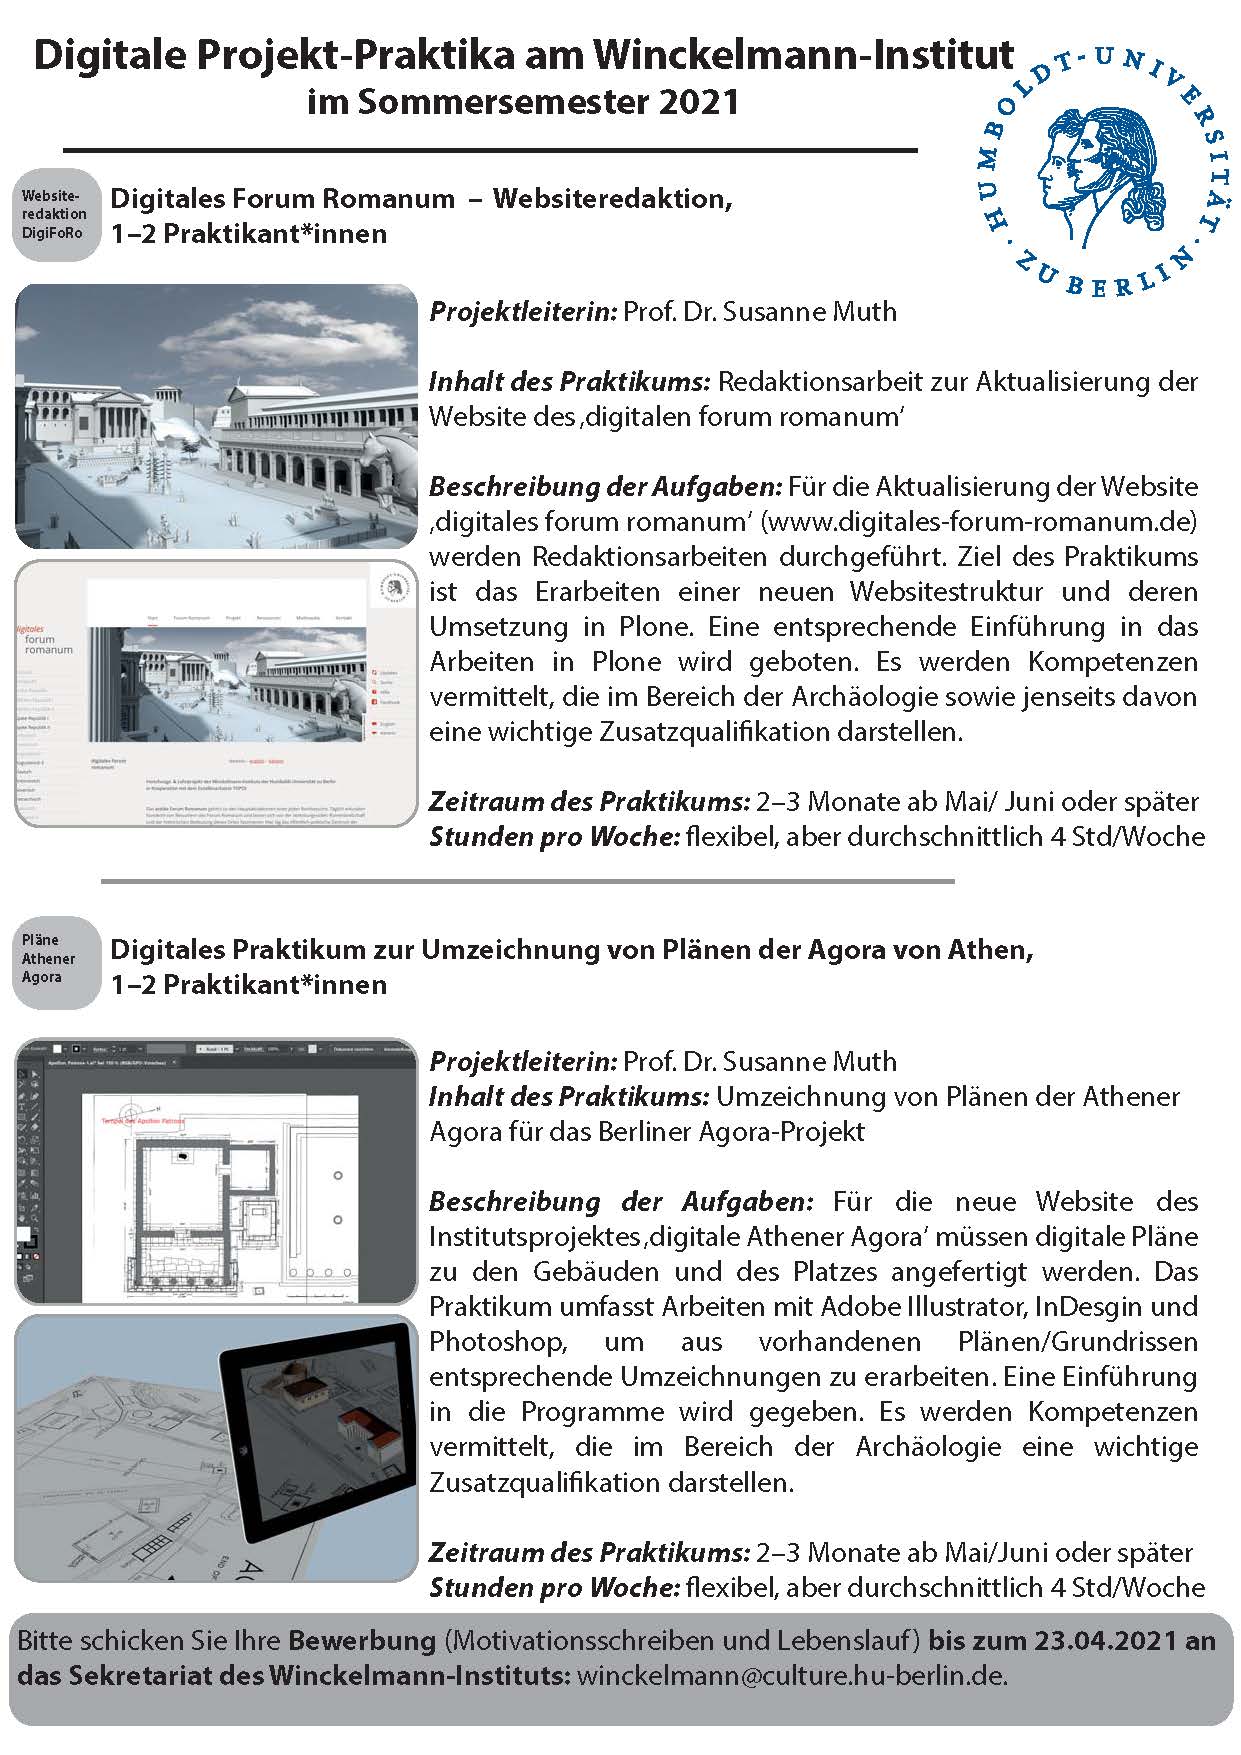 Ausschreibung_Digitale Projekt-Praktika_Winckelmann-Institut_SoSe2021_Seite_4.jpg